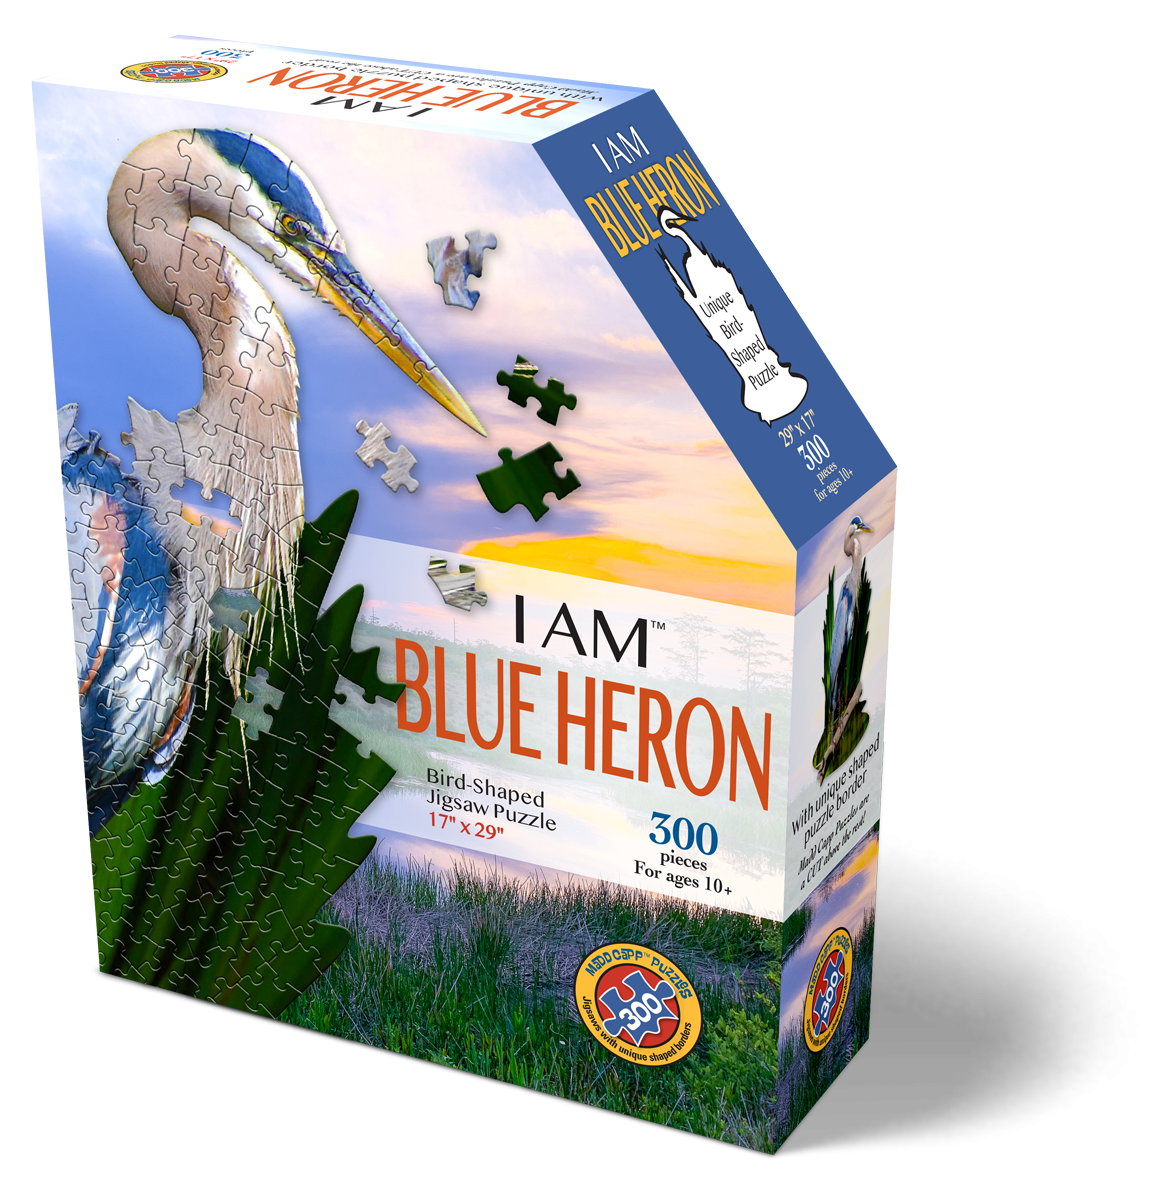 I AM BLUE HERON 300